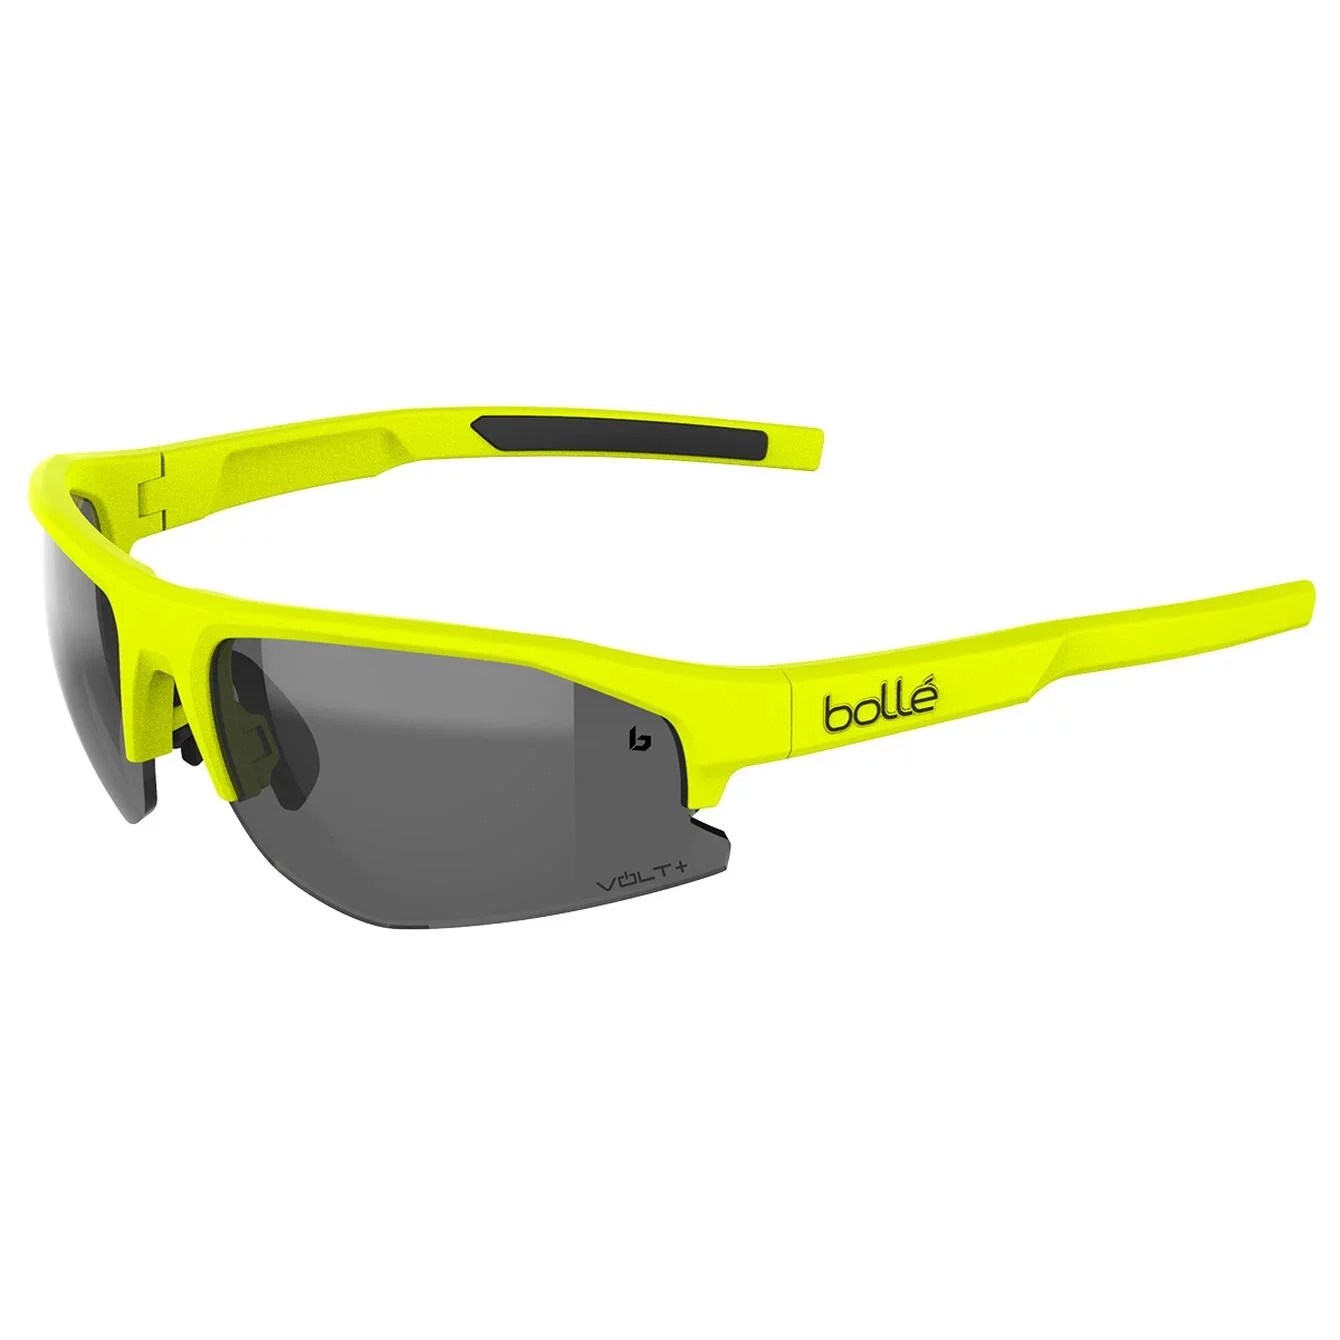 Bollé Bolt 2.0, sunglasses for tennis